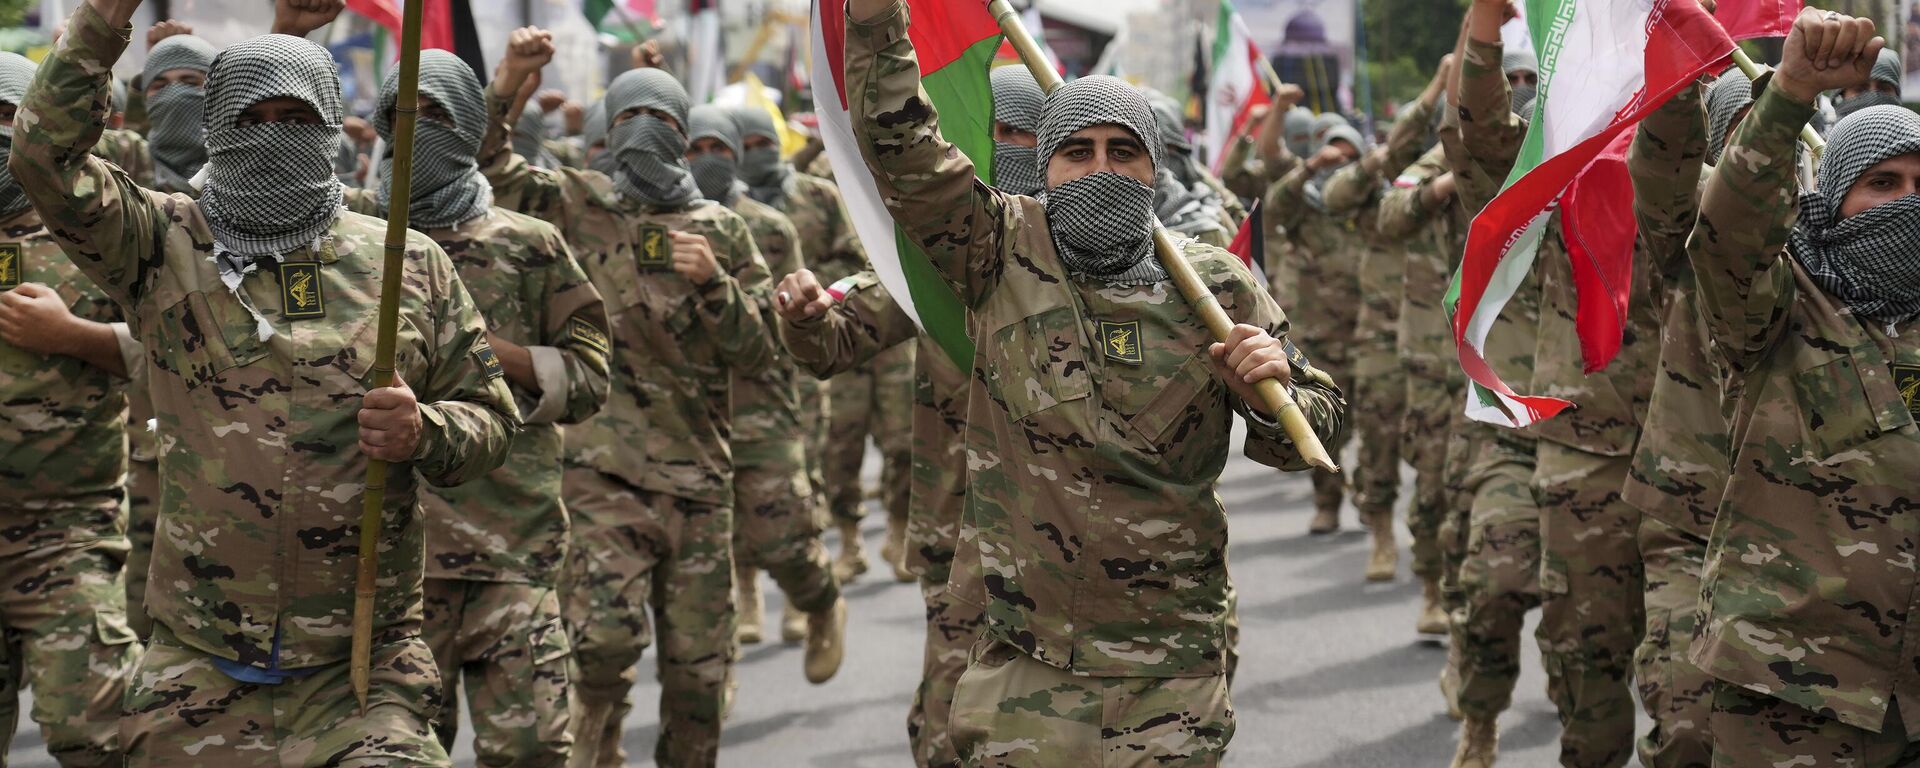 Membros da força paramilitar Basij marcham durante o comício anual pró-palestino, enquanto cobrem seus rostos no estilo de militantes palestinos e libaneses, em Teerã. Irã, 29 de abril de 2022 (foto de arquivo) - Sputnik Brasil, 1920, 27.01.2023